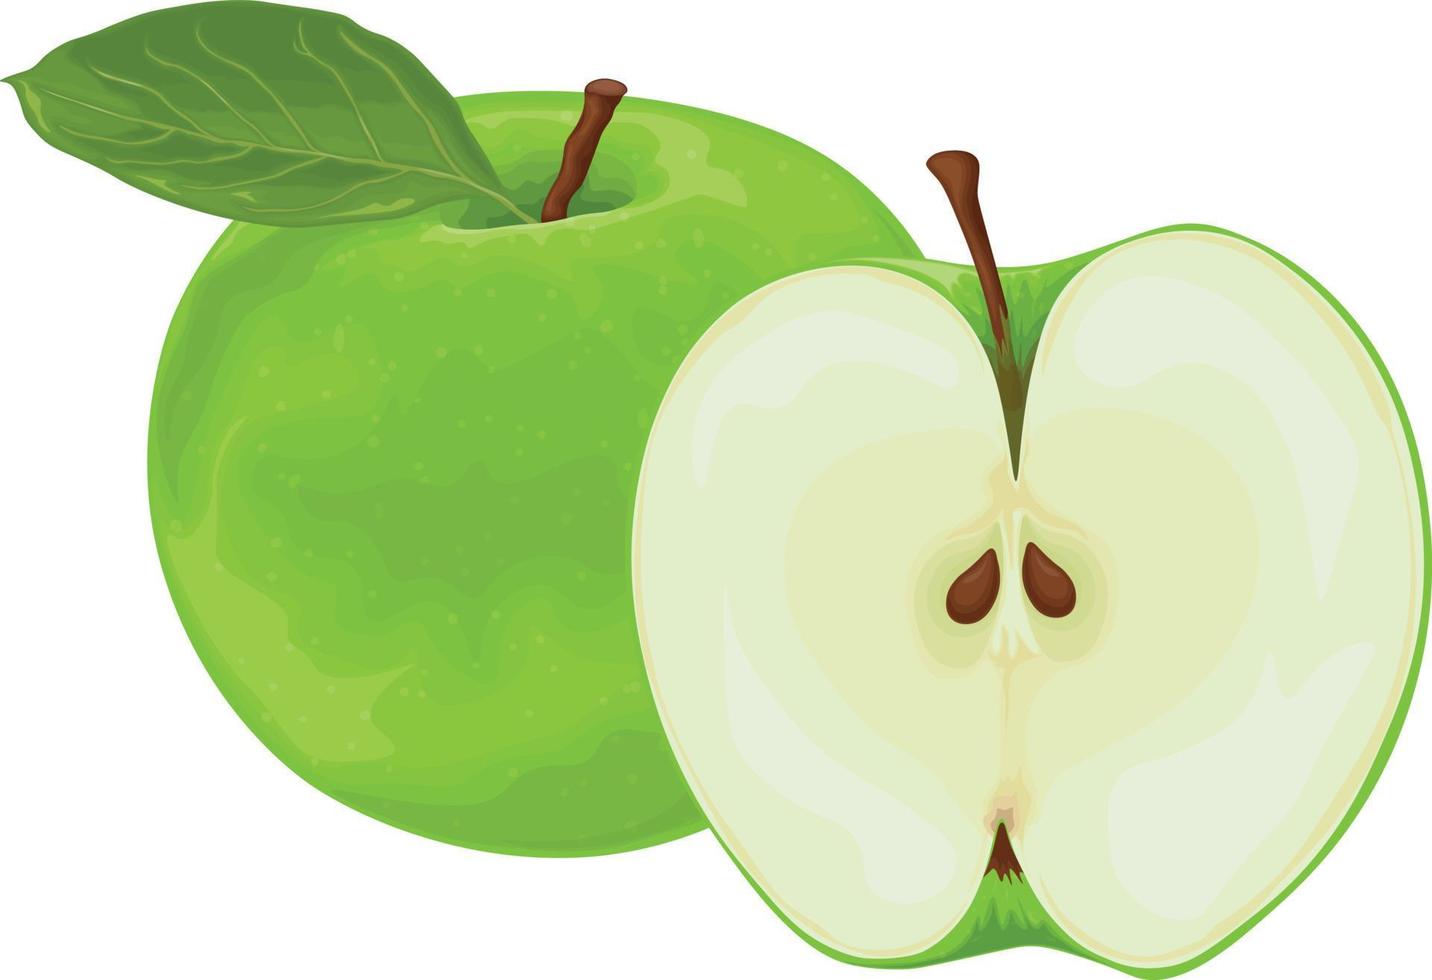 äpple. de bild av en grön äpple i de sektion. färsk trädgård frukt. vegetarian produkt. vektor illustration isolerat på en vit bakgrund